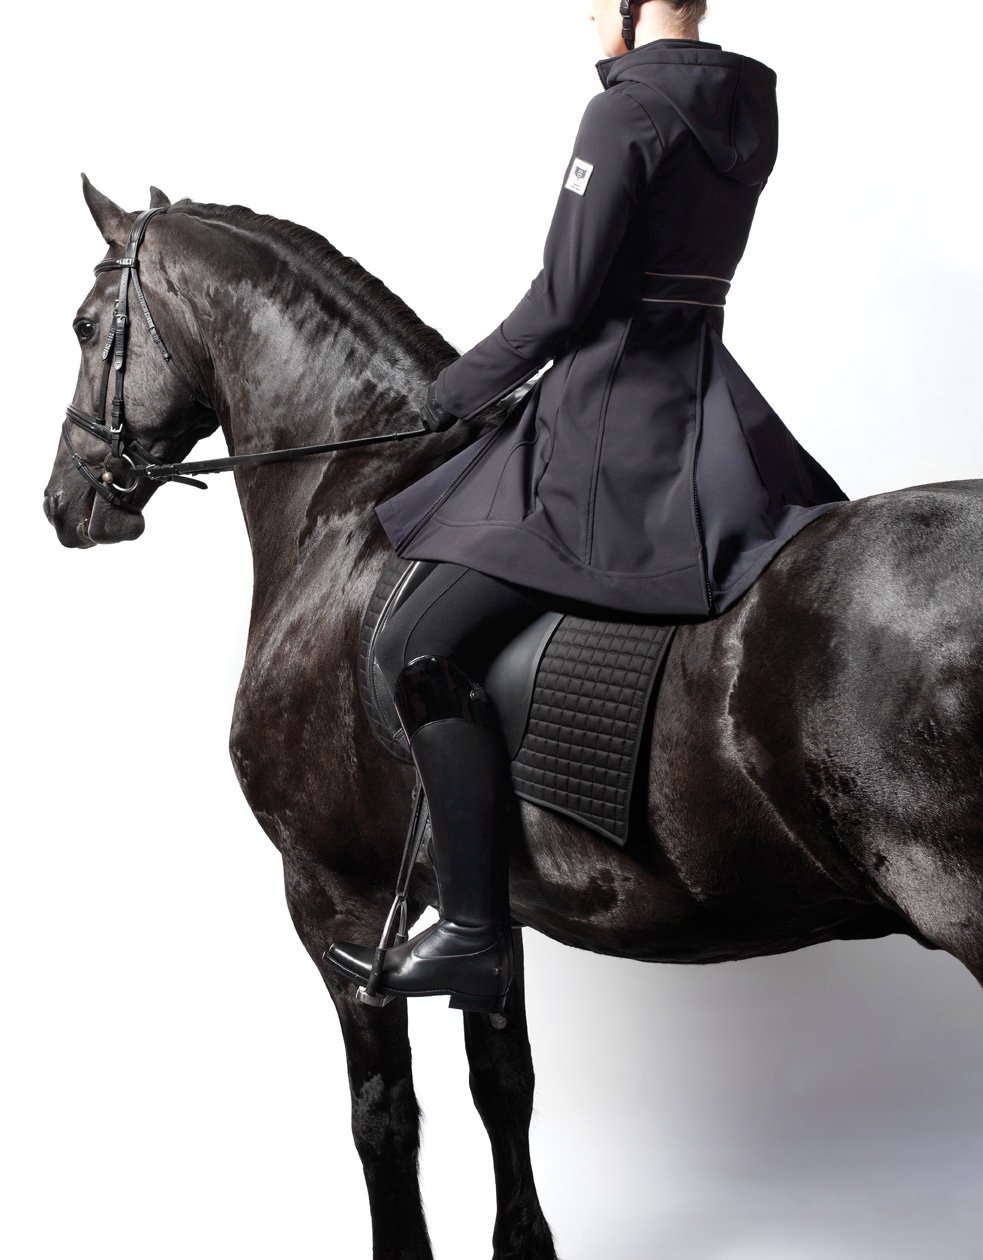 В форме на коне. Редингот для верховой езды мужской 19 века. Костюм для верховой езды. Одежда для езды на лошади. Одежда для наездников на лошадях.